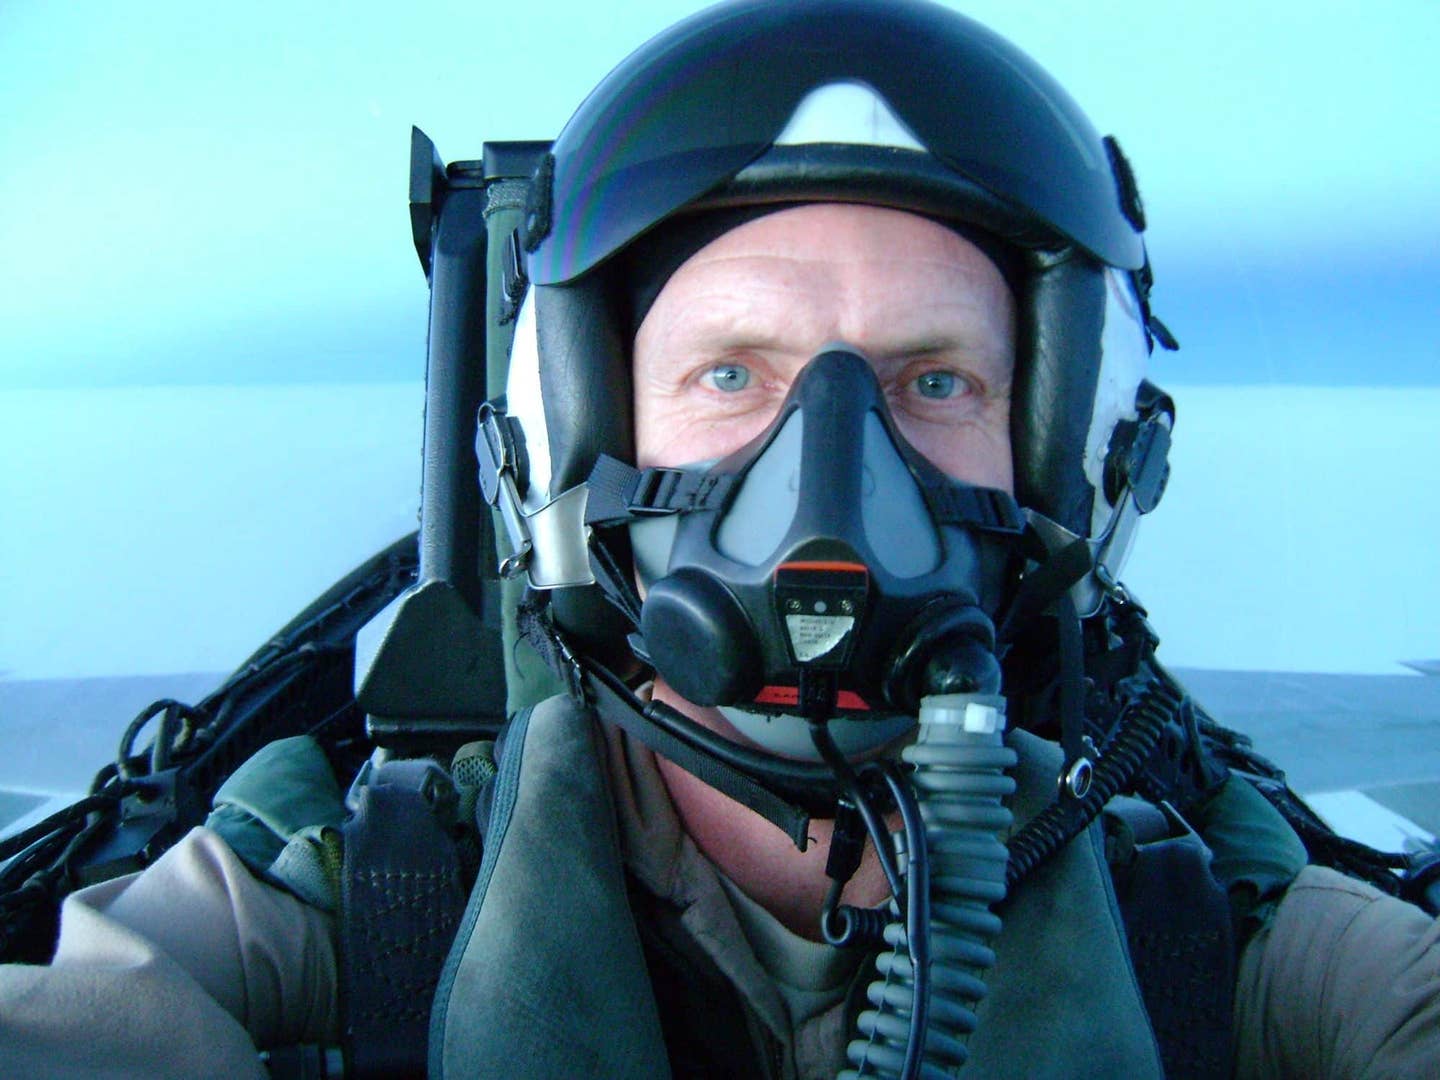 Scott in the cockpit of the Hornet. (Scott "Intake" Kartvedt)